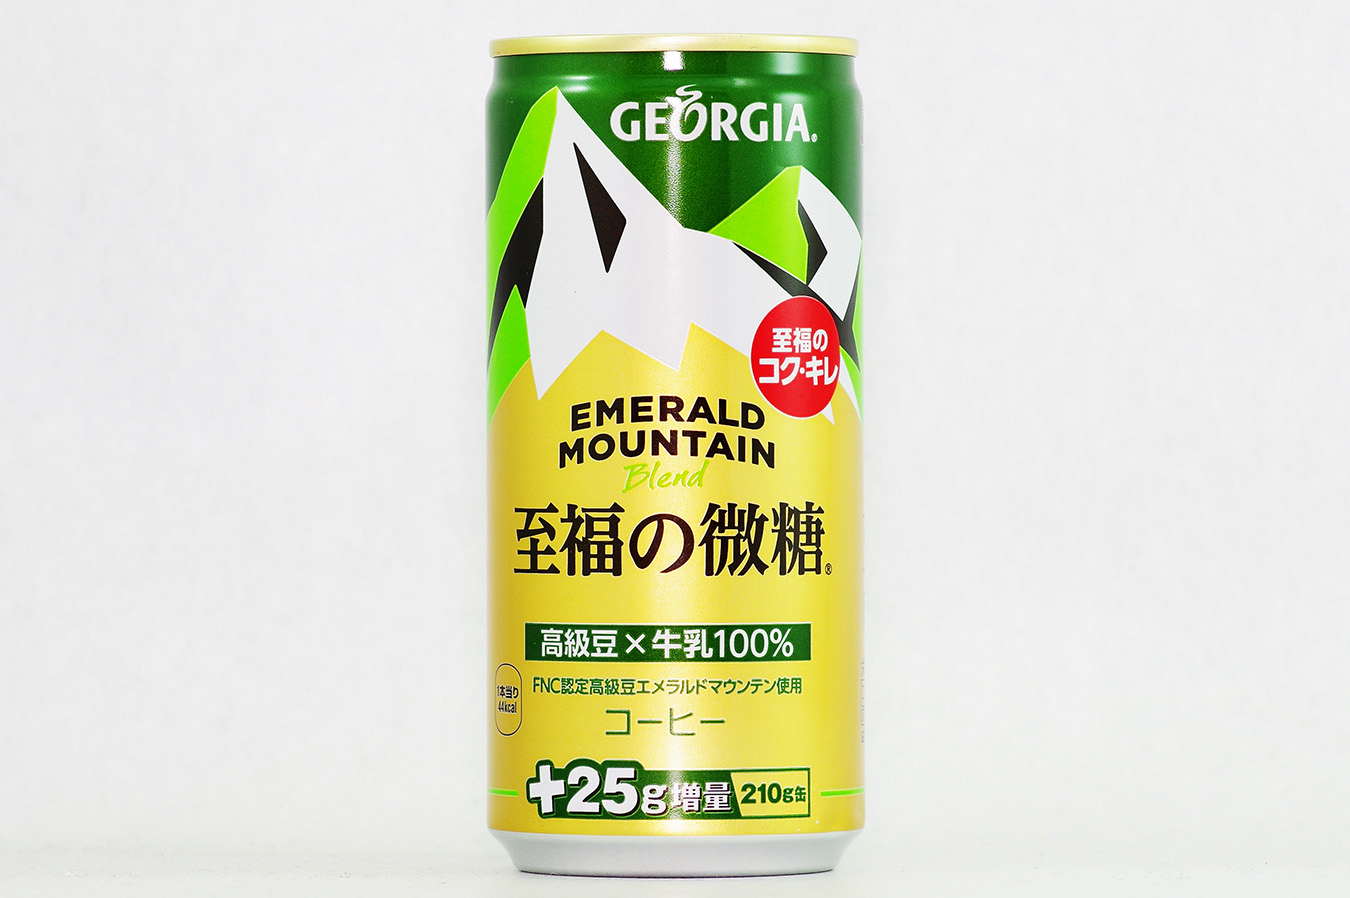 GEORGIA エメラルドマウンテンブレンド 至福の微糖 +25g増量210g缶 2016年5月